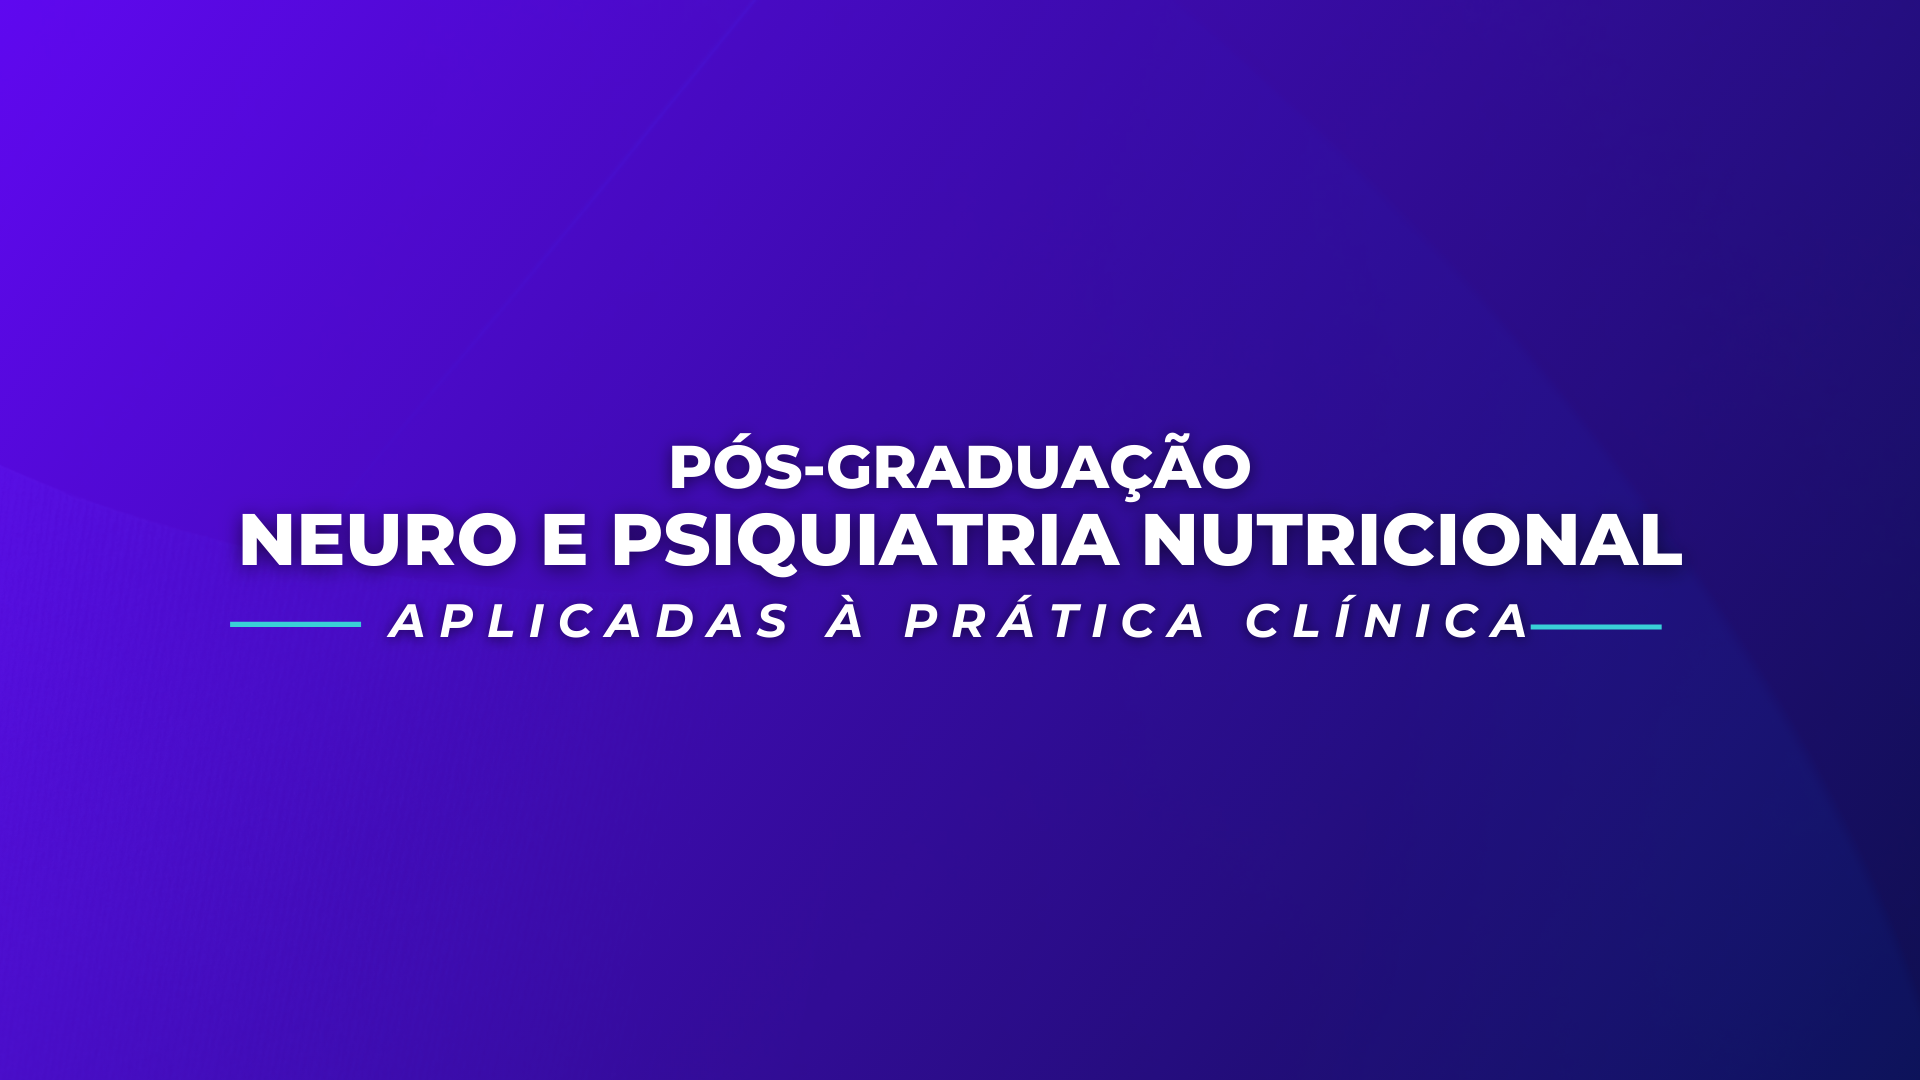 Pós-Graduação em Neuro e Psiquiatria Nutricional Aplicadas a Prática Clínica - Turma 2